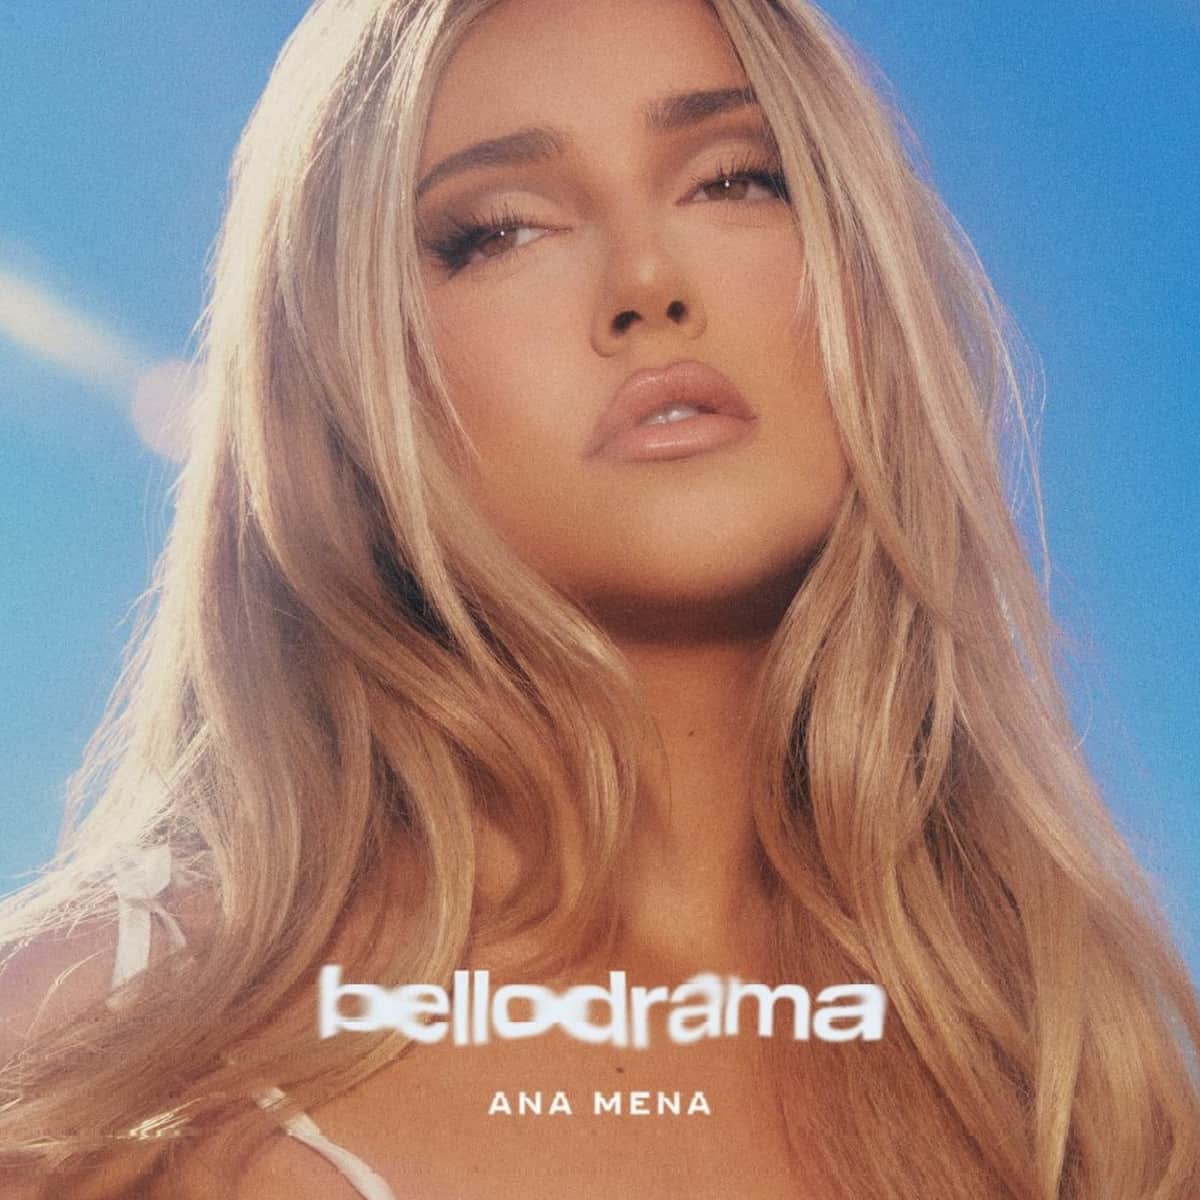 Ana Mena Album bellodrama 2023 - hier im Bild das Album-Cover